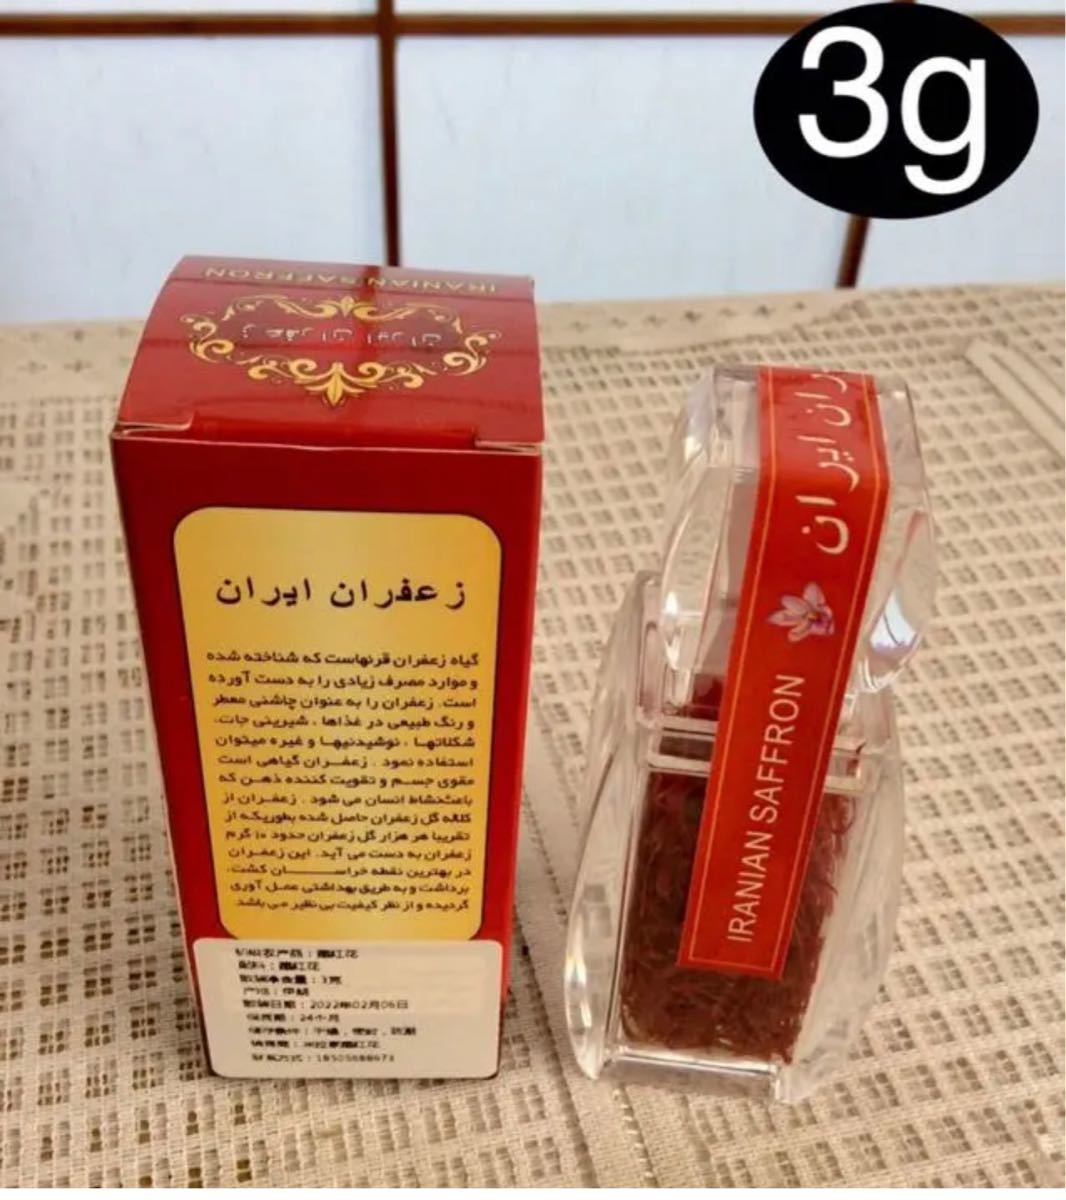 サフラン イラン産サフラン 3g 蔵紅花